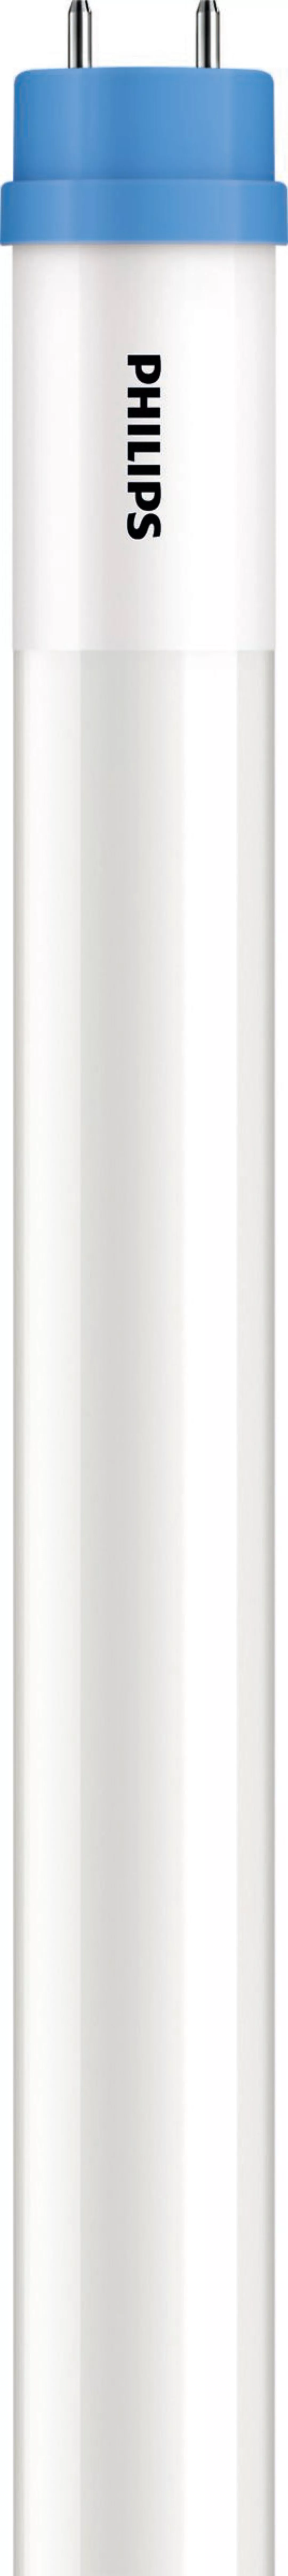 Philips Lighting LED-Tube T8 KVG/VVG G13, 840, 1500mm CoreLEDtube#45981600 günstig online kaufen